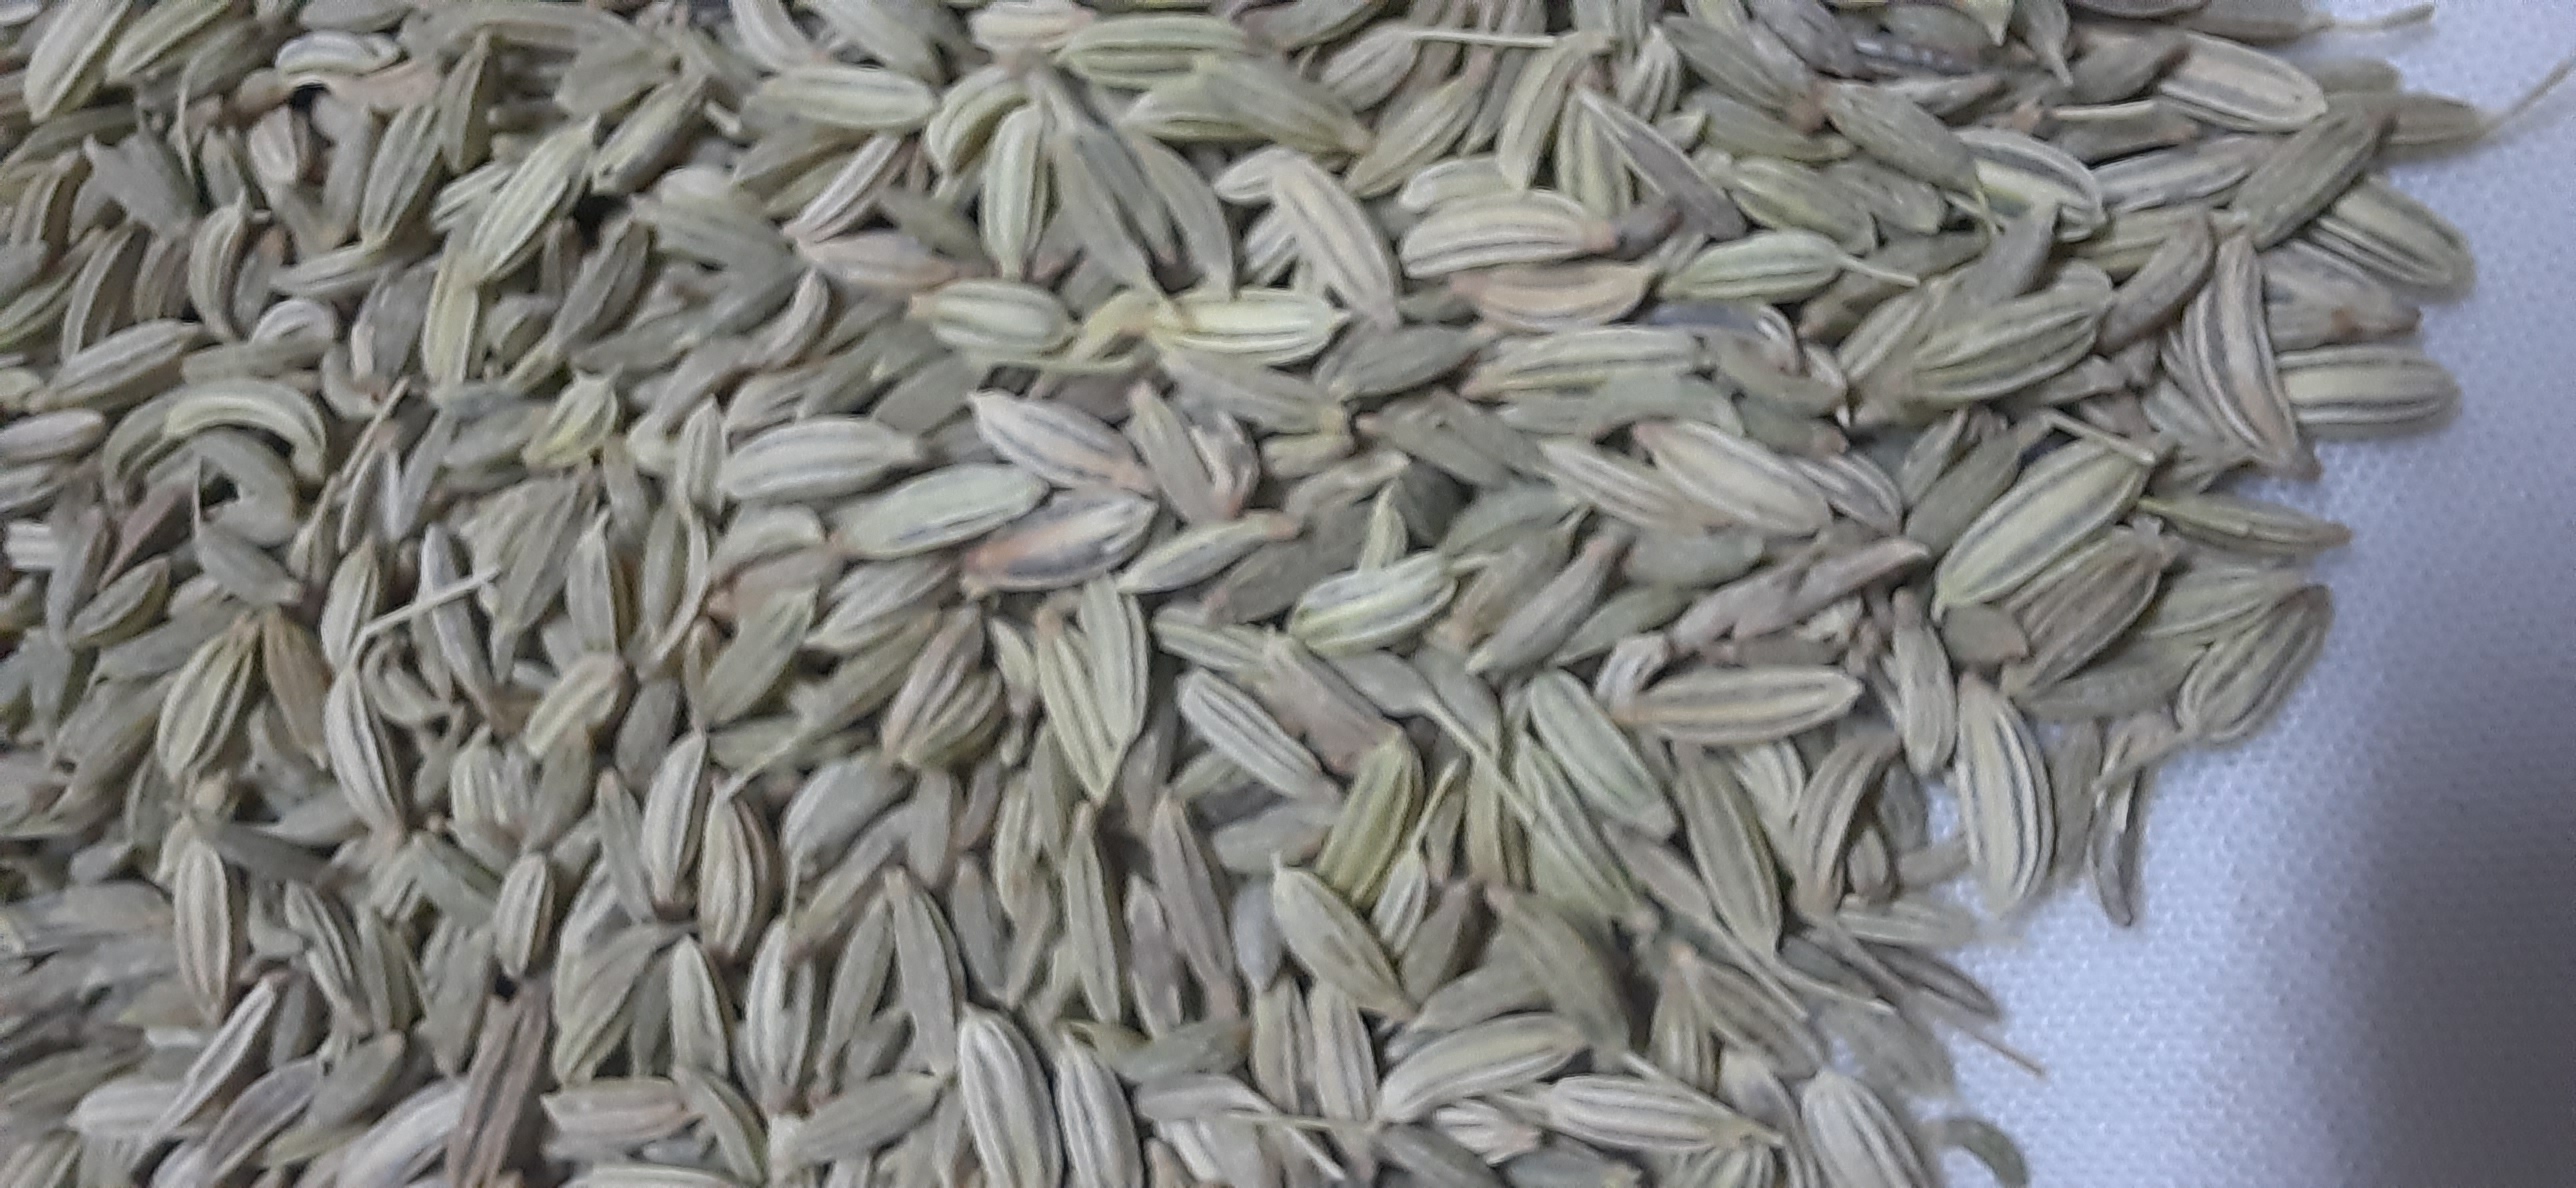 Variyali/fennel seeds